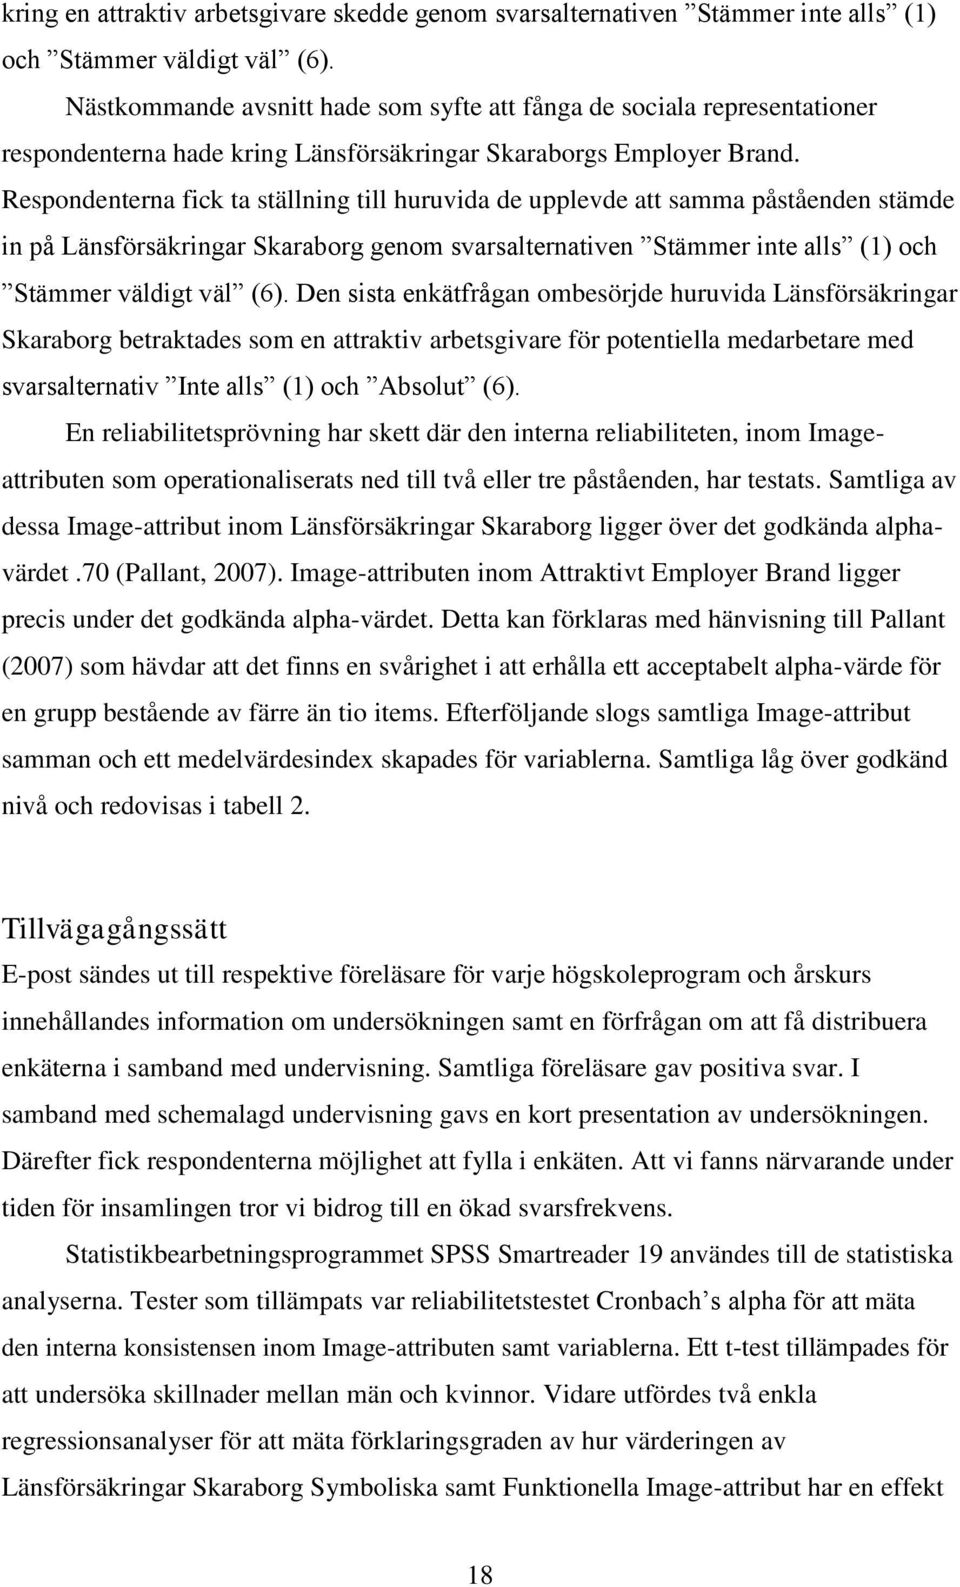 Respondenterna fick ta ställning till huruvida de upplevde att samma påståenden stämde in på Länsförsäkringar Skaraborg genom svarsalternativen Stämmer inte alls (1) och Stämmer väldigt väl (6).